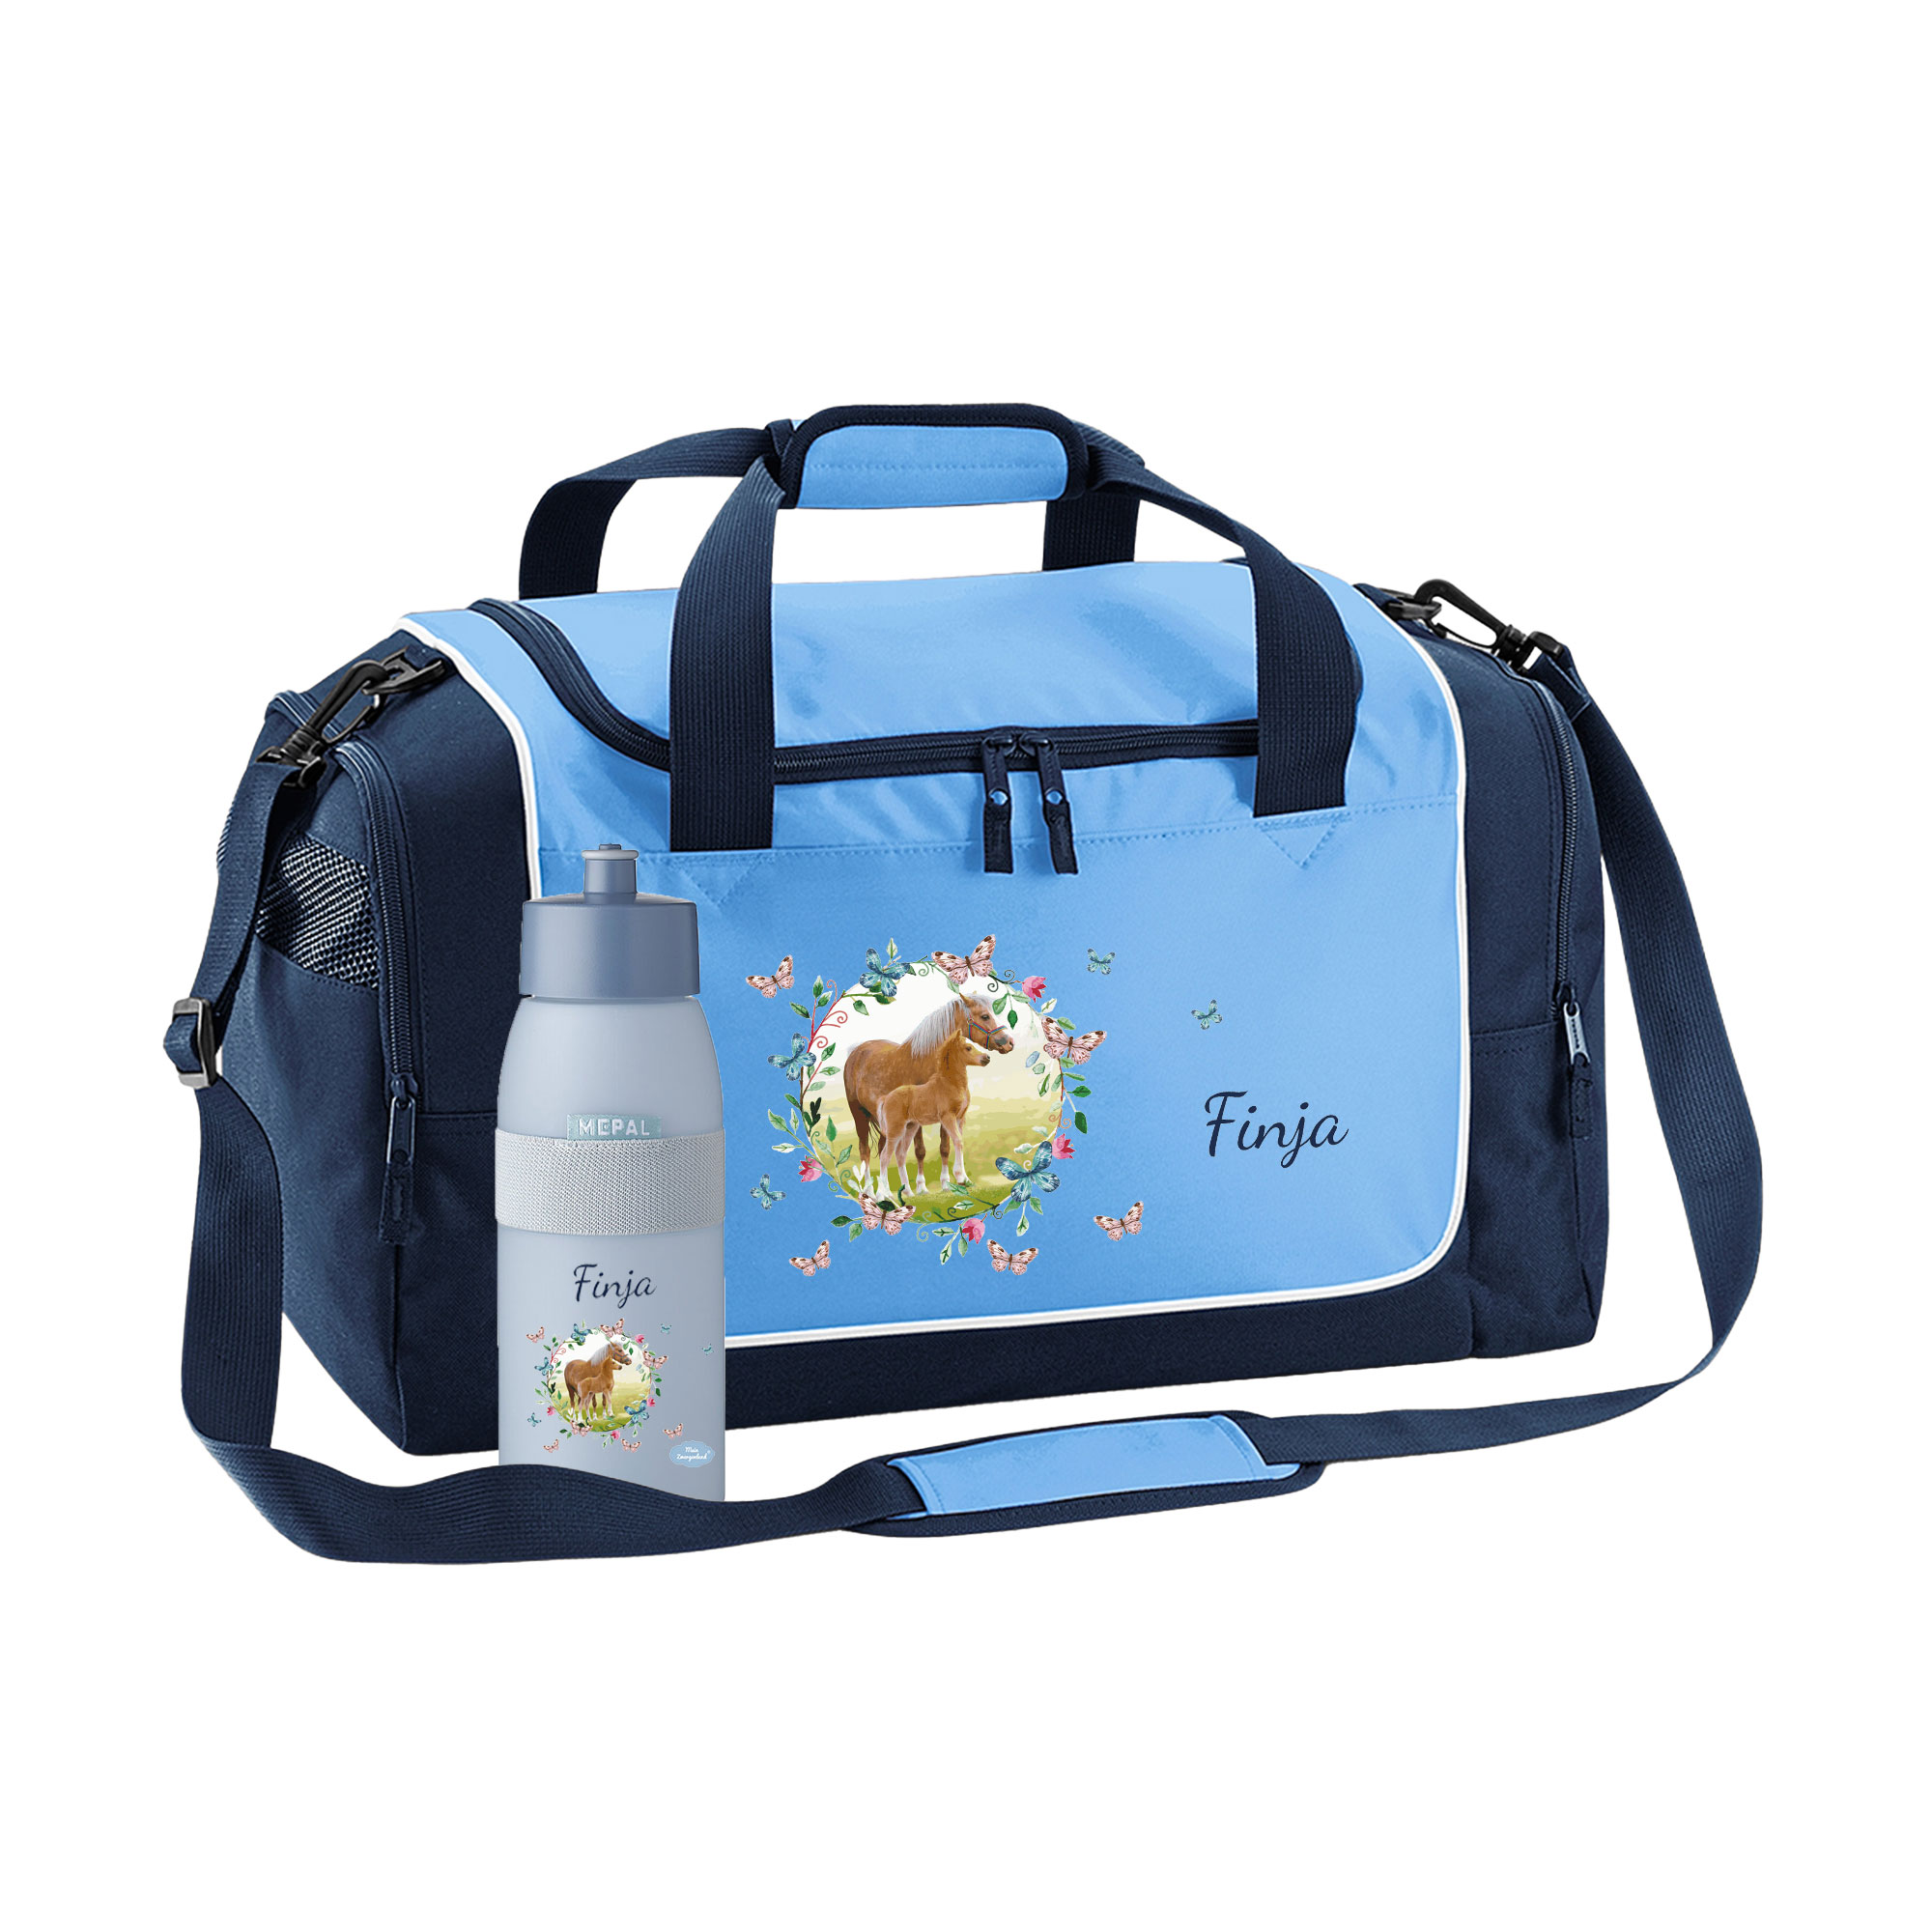 Sporttasche mit Trinkflasche 38L in Sky Blue mit Name und Motiv Pferdewiese mit Schmetterling